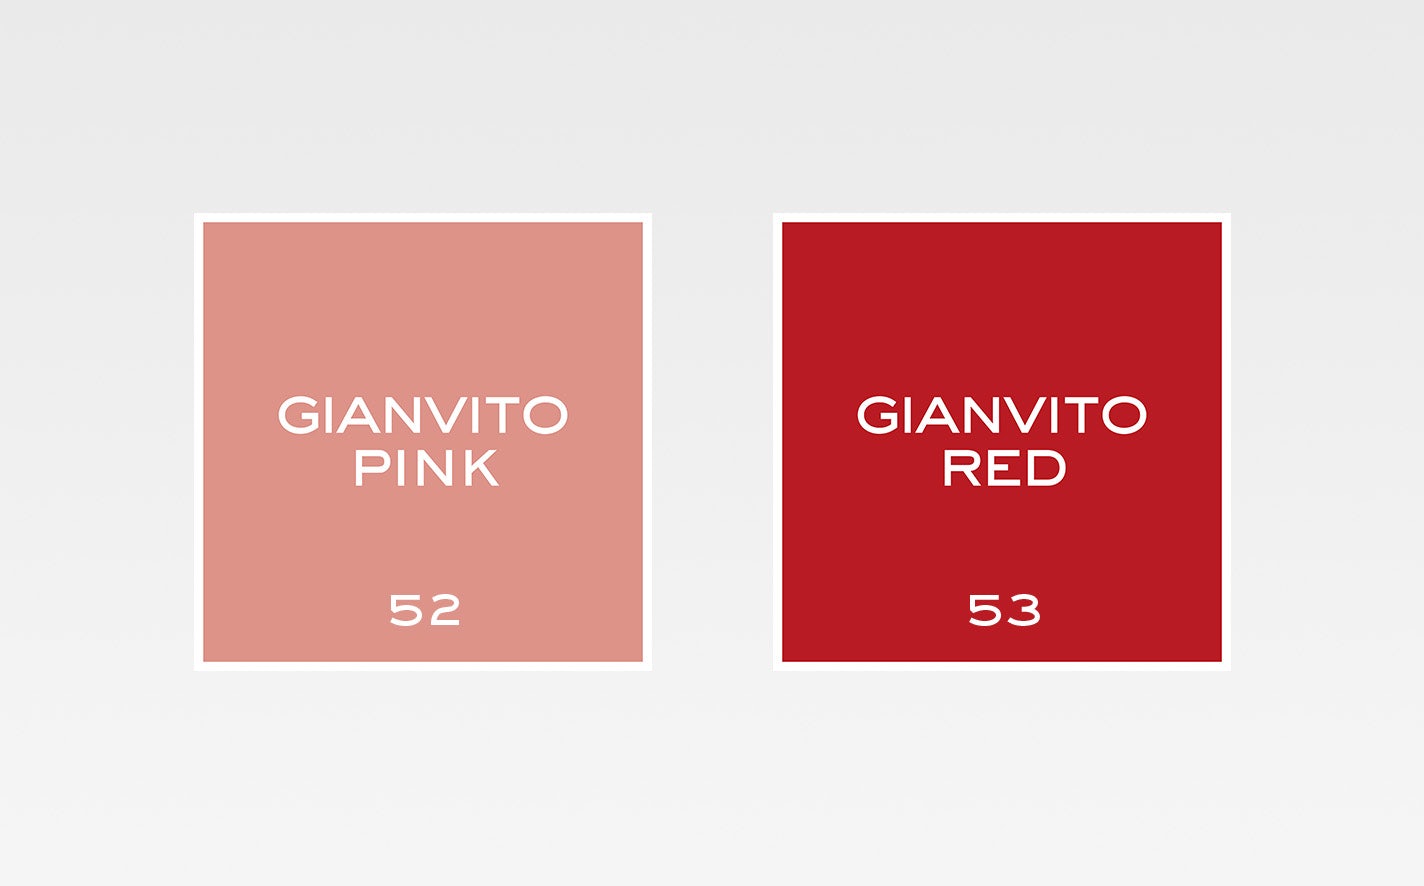 La bouche rouge teintes de rouge à lèvres Gianvito Pink et Gianvito Red